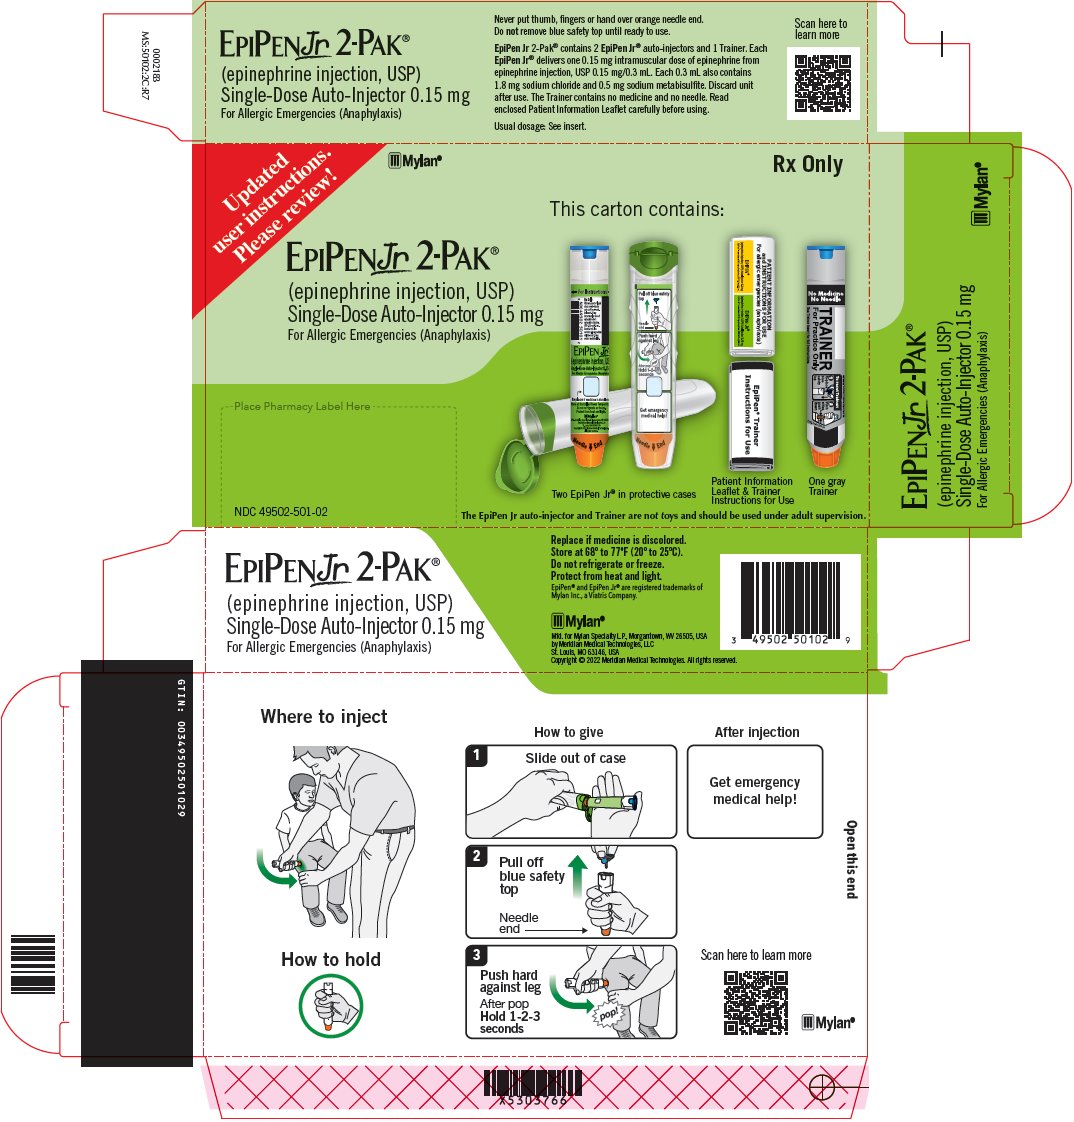 EPIPEN Jr 2-PAK 0.15 mg Carton Label